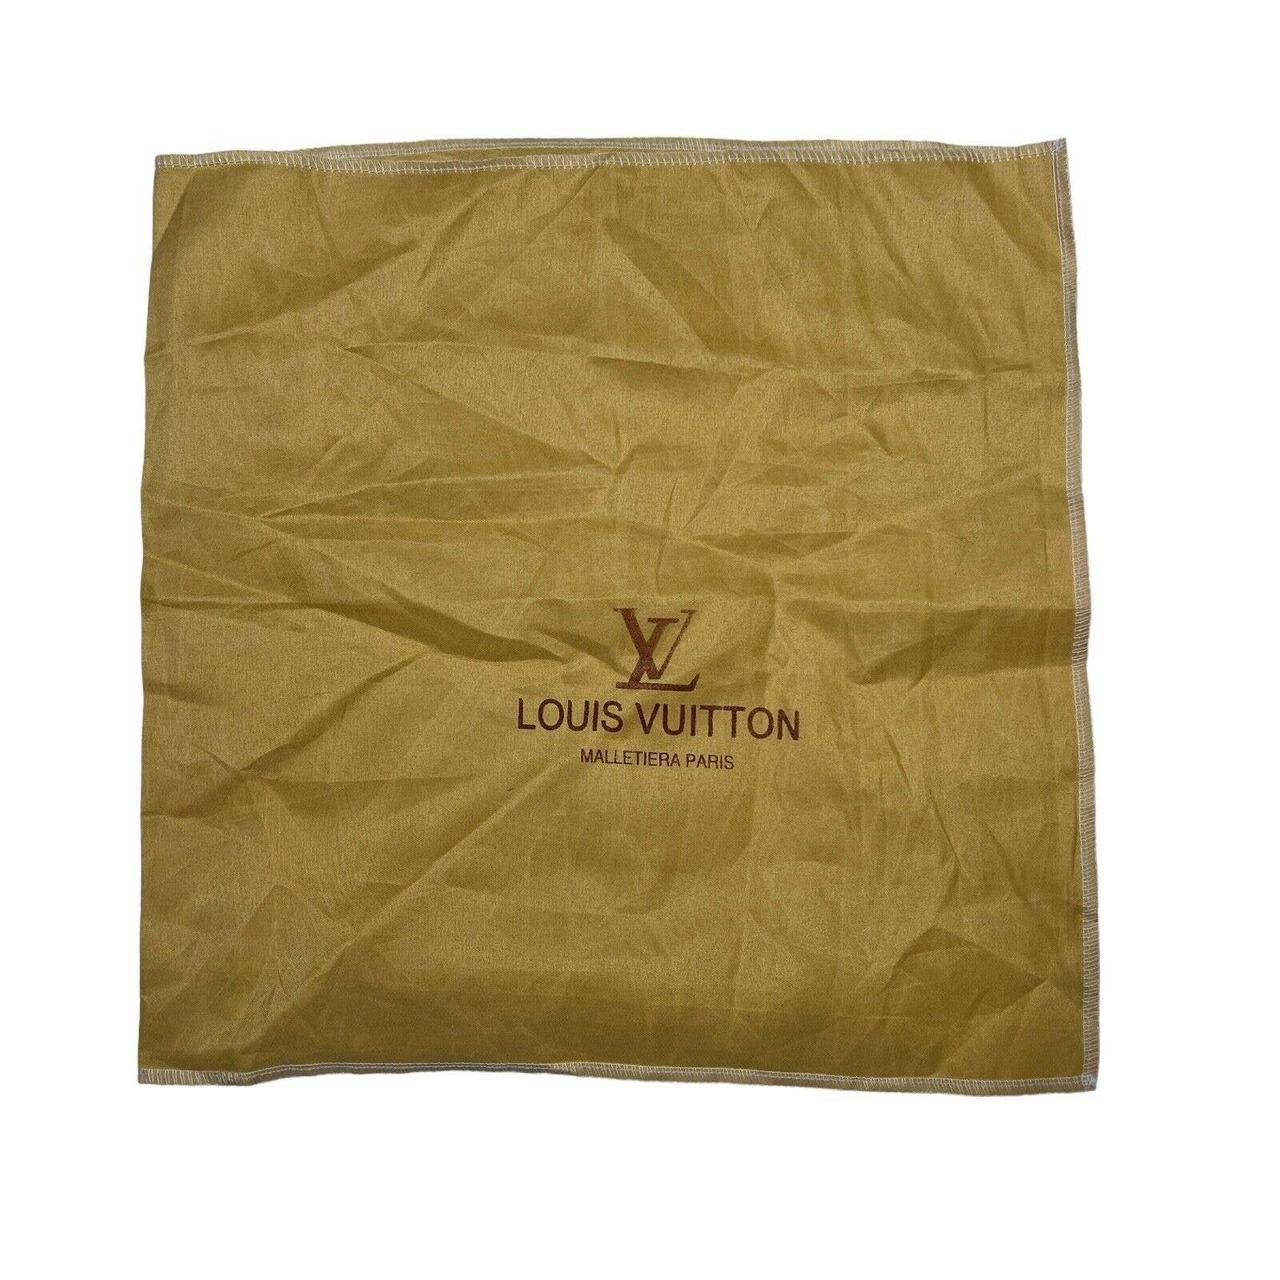 Louis Vuitton Malletier A Paris T Shirt Bag